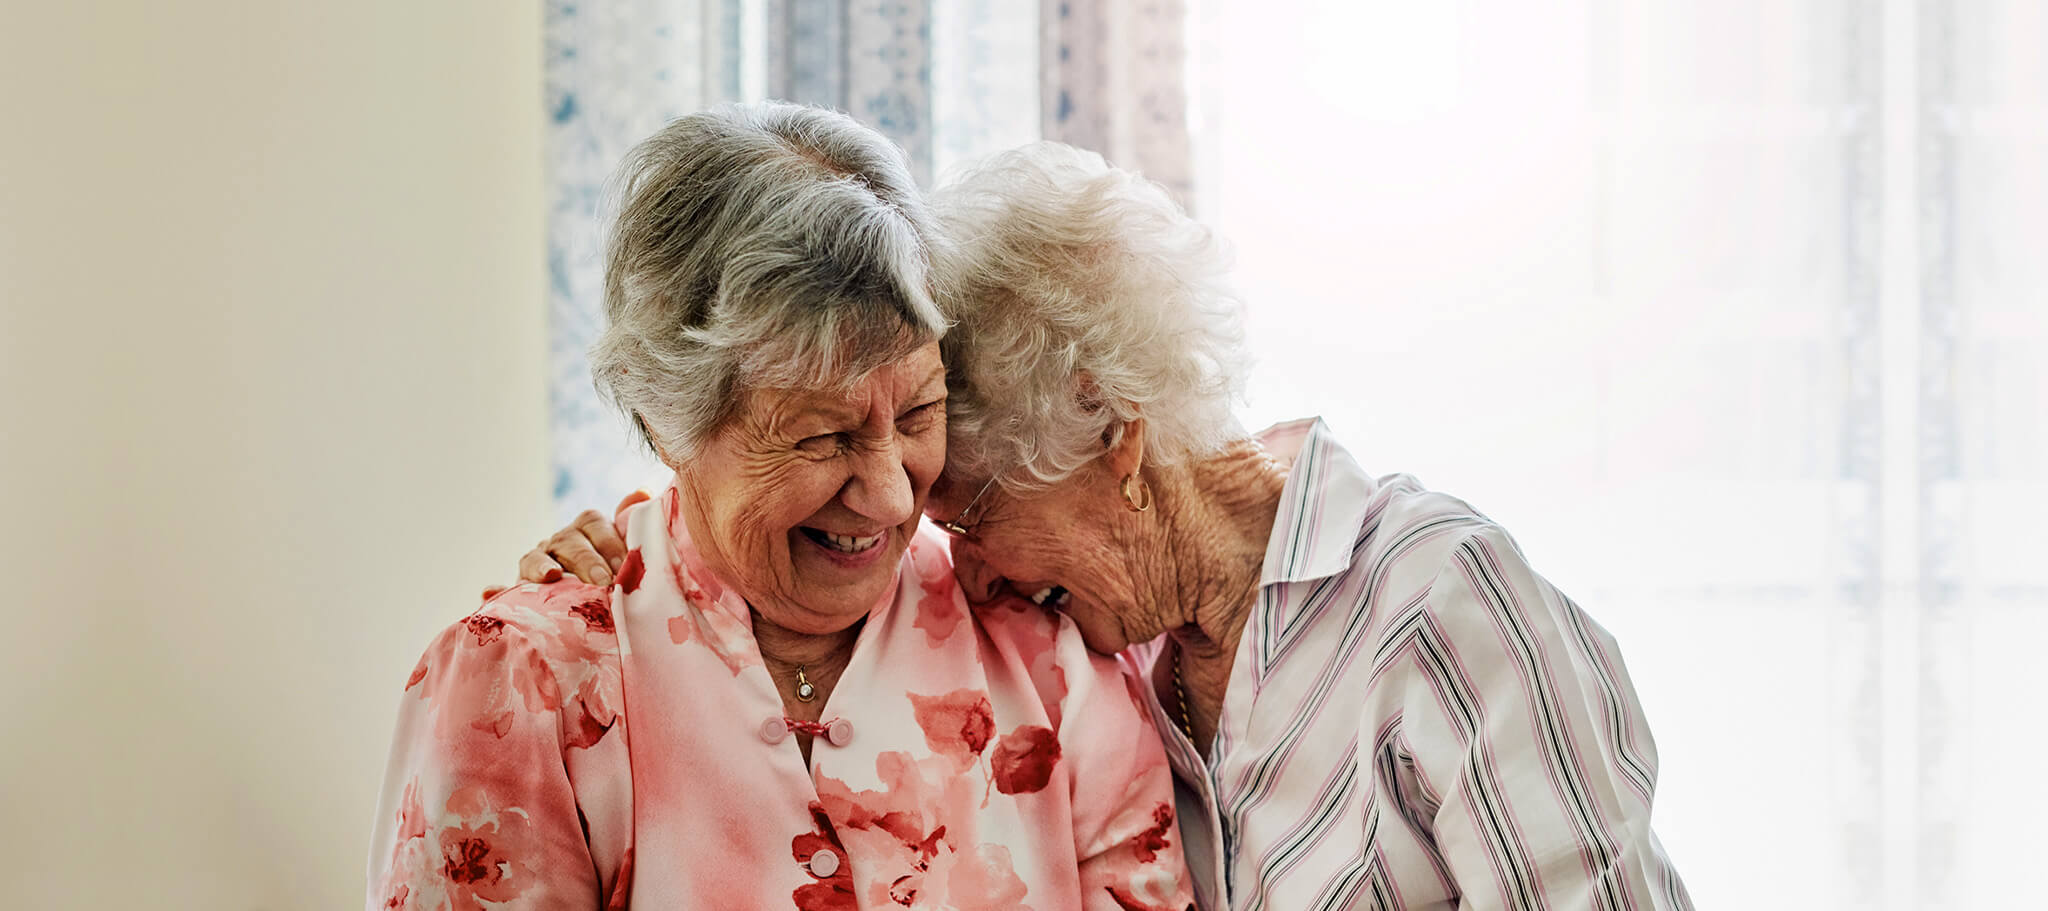 Ältere Menschen - Aufnahme von zwei glücklichen älteren Frauen, die zu Hause Zeit miteinander verbringen.